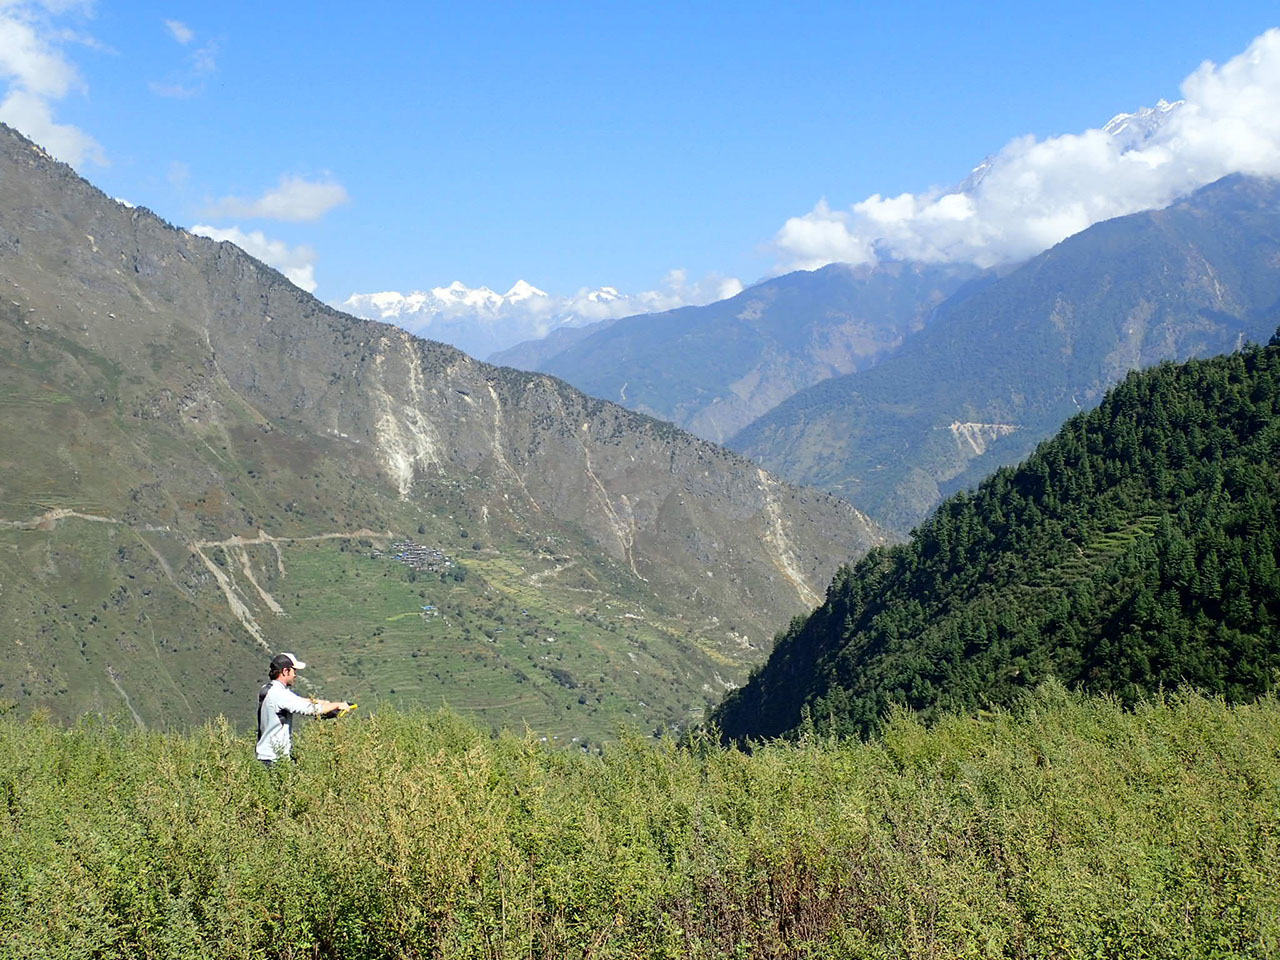 On fieldwork in Nepal